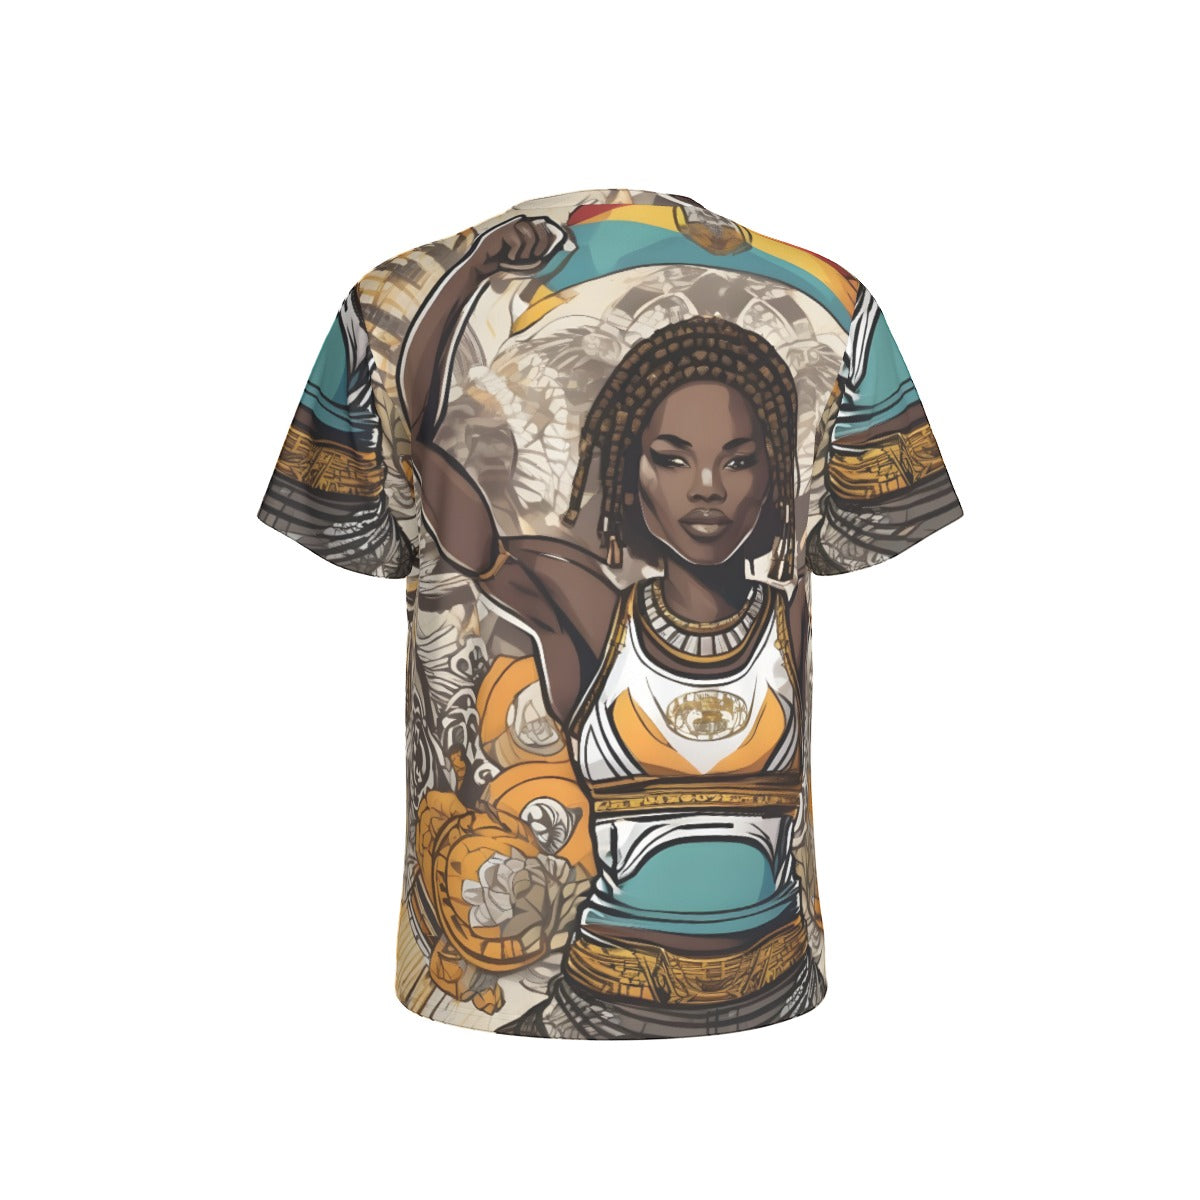 Africa Top Team Warrior Culture Warrior Princess T-Shirt